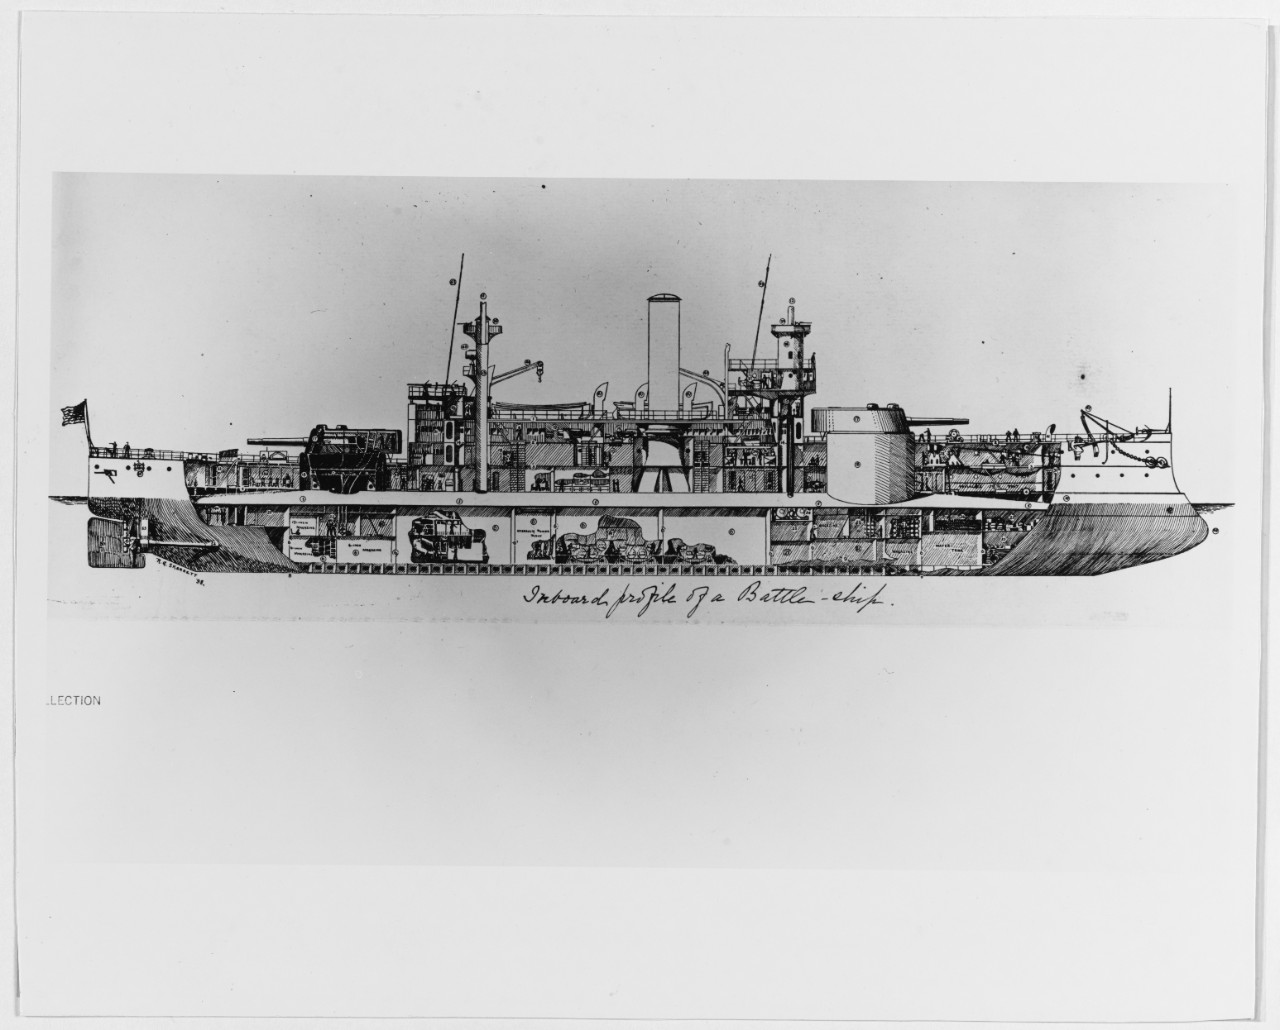 Illinois class battleship